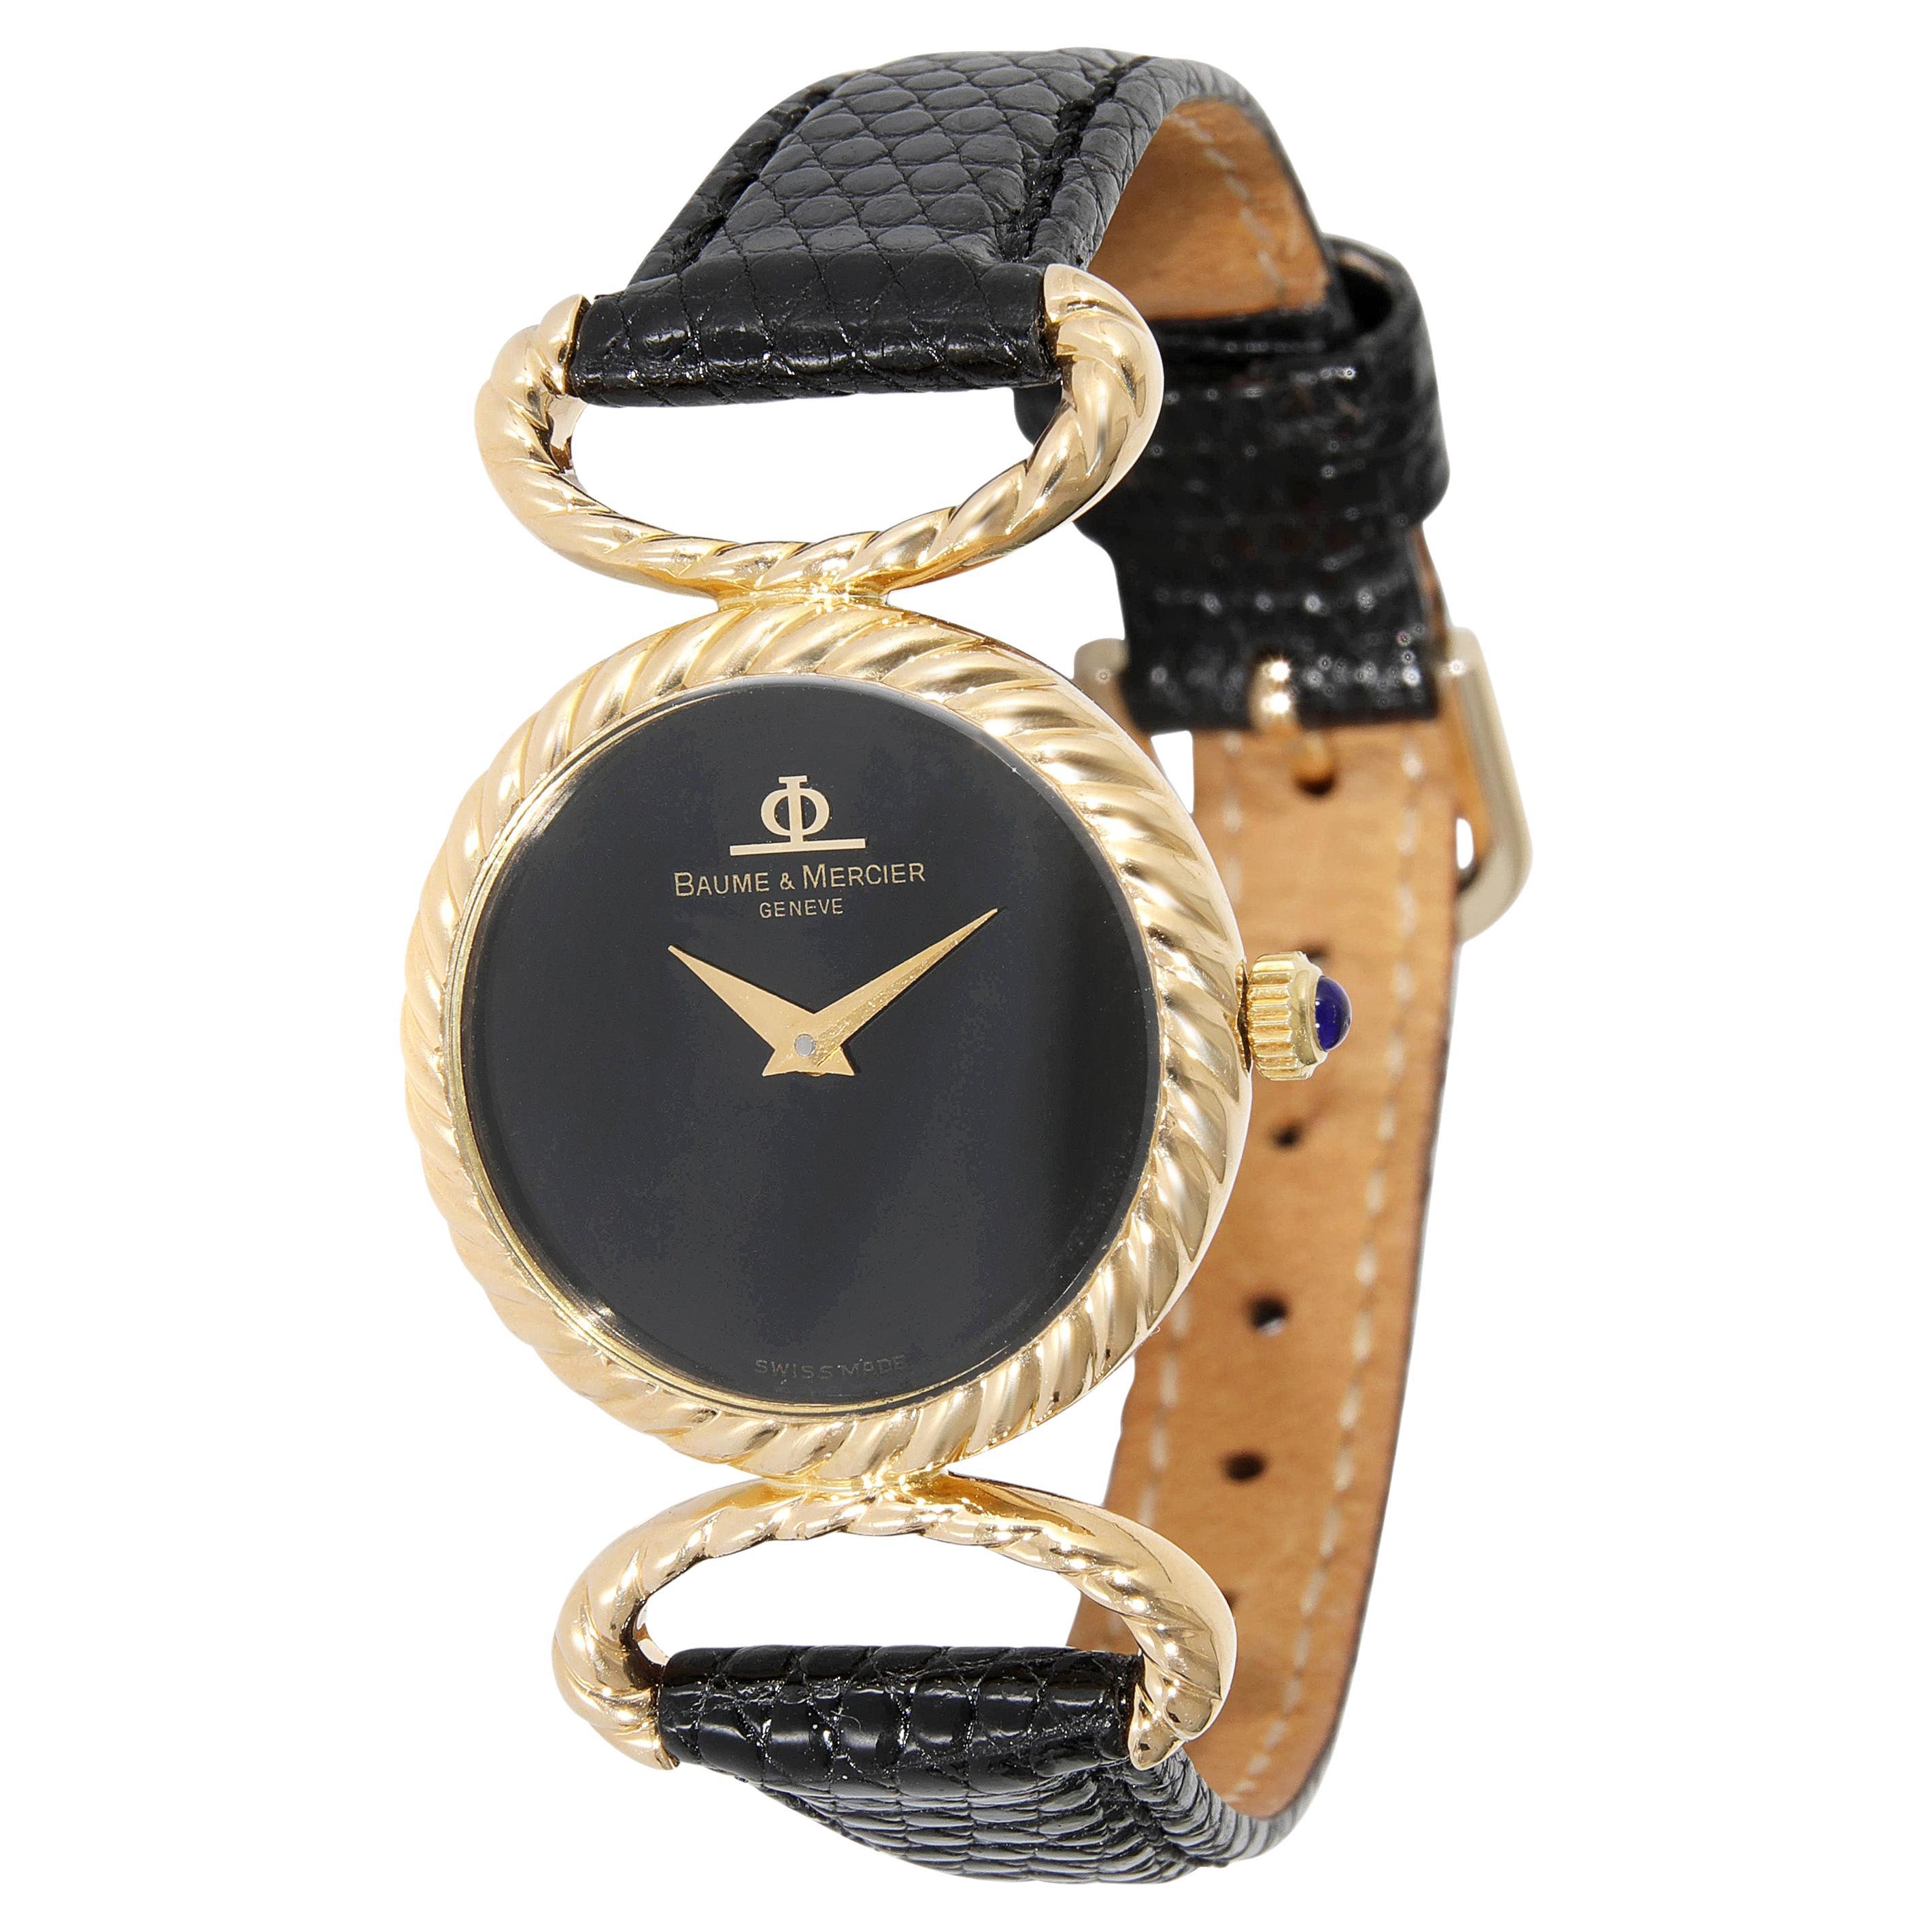 Baume & Mercier Classique 905367 Women's Watch in 18kt Yellow Gold